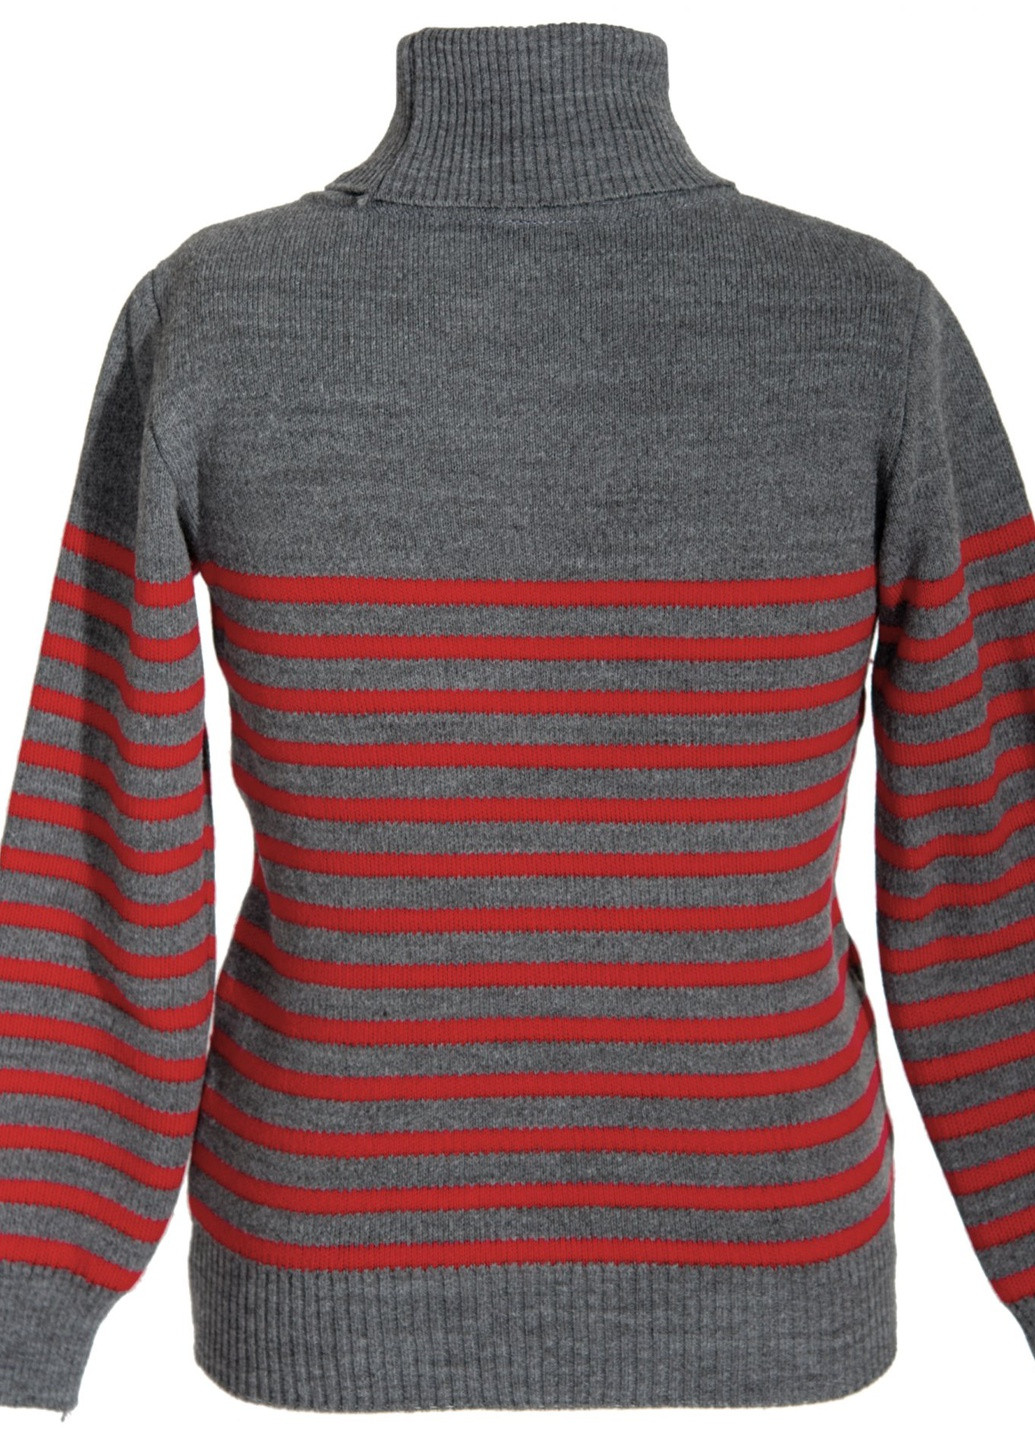 Червоний светри светр на хлопчика в смужку (полоска) Lemanta